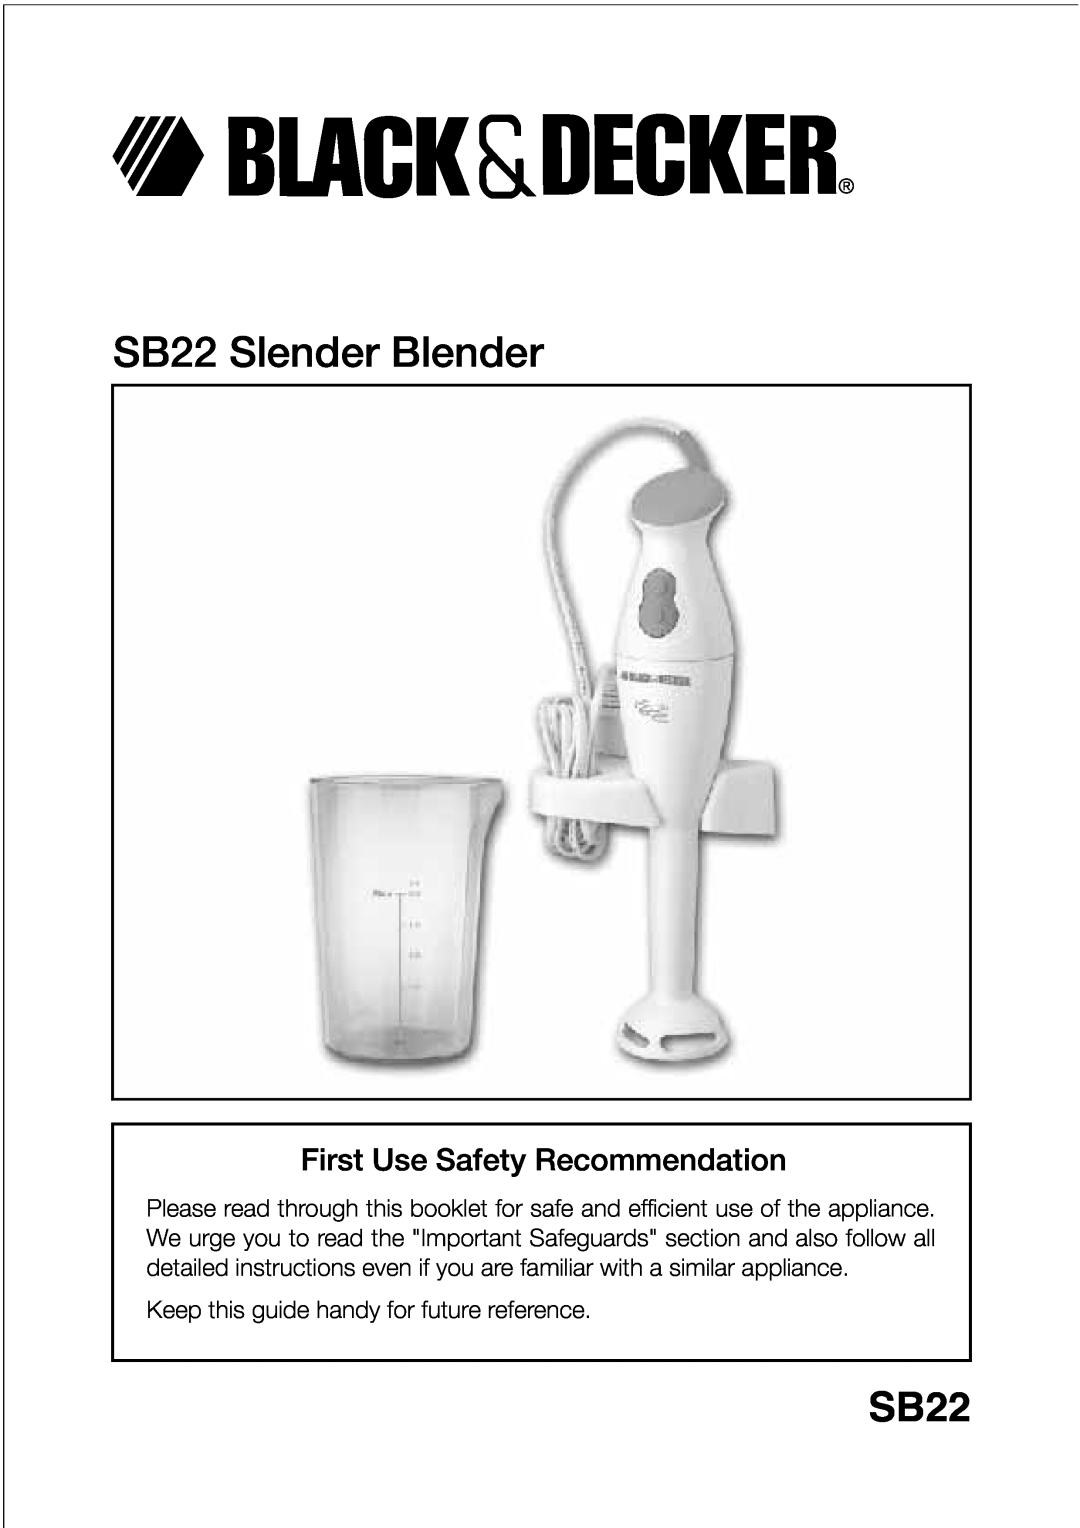 Black & Decker manual First Use Safety Recommendation, SB22 Slender Blender 